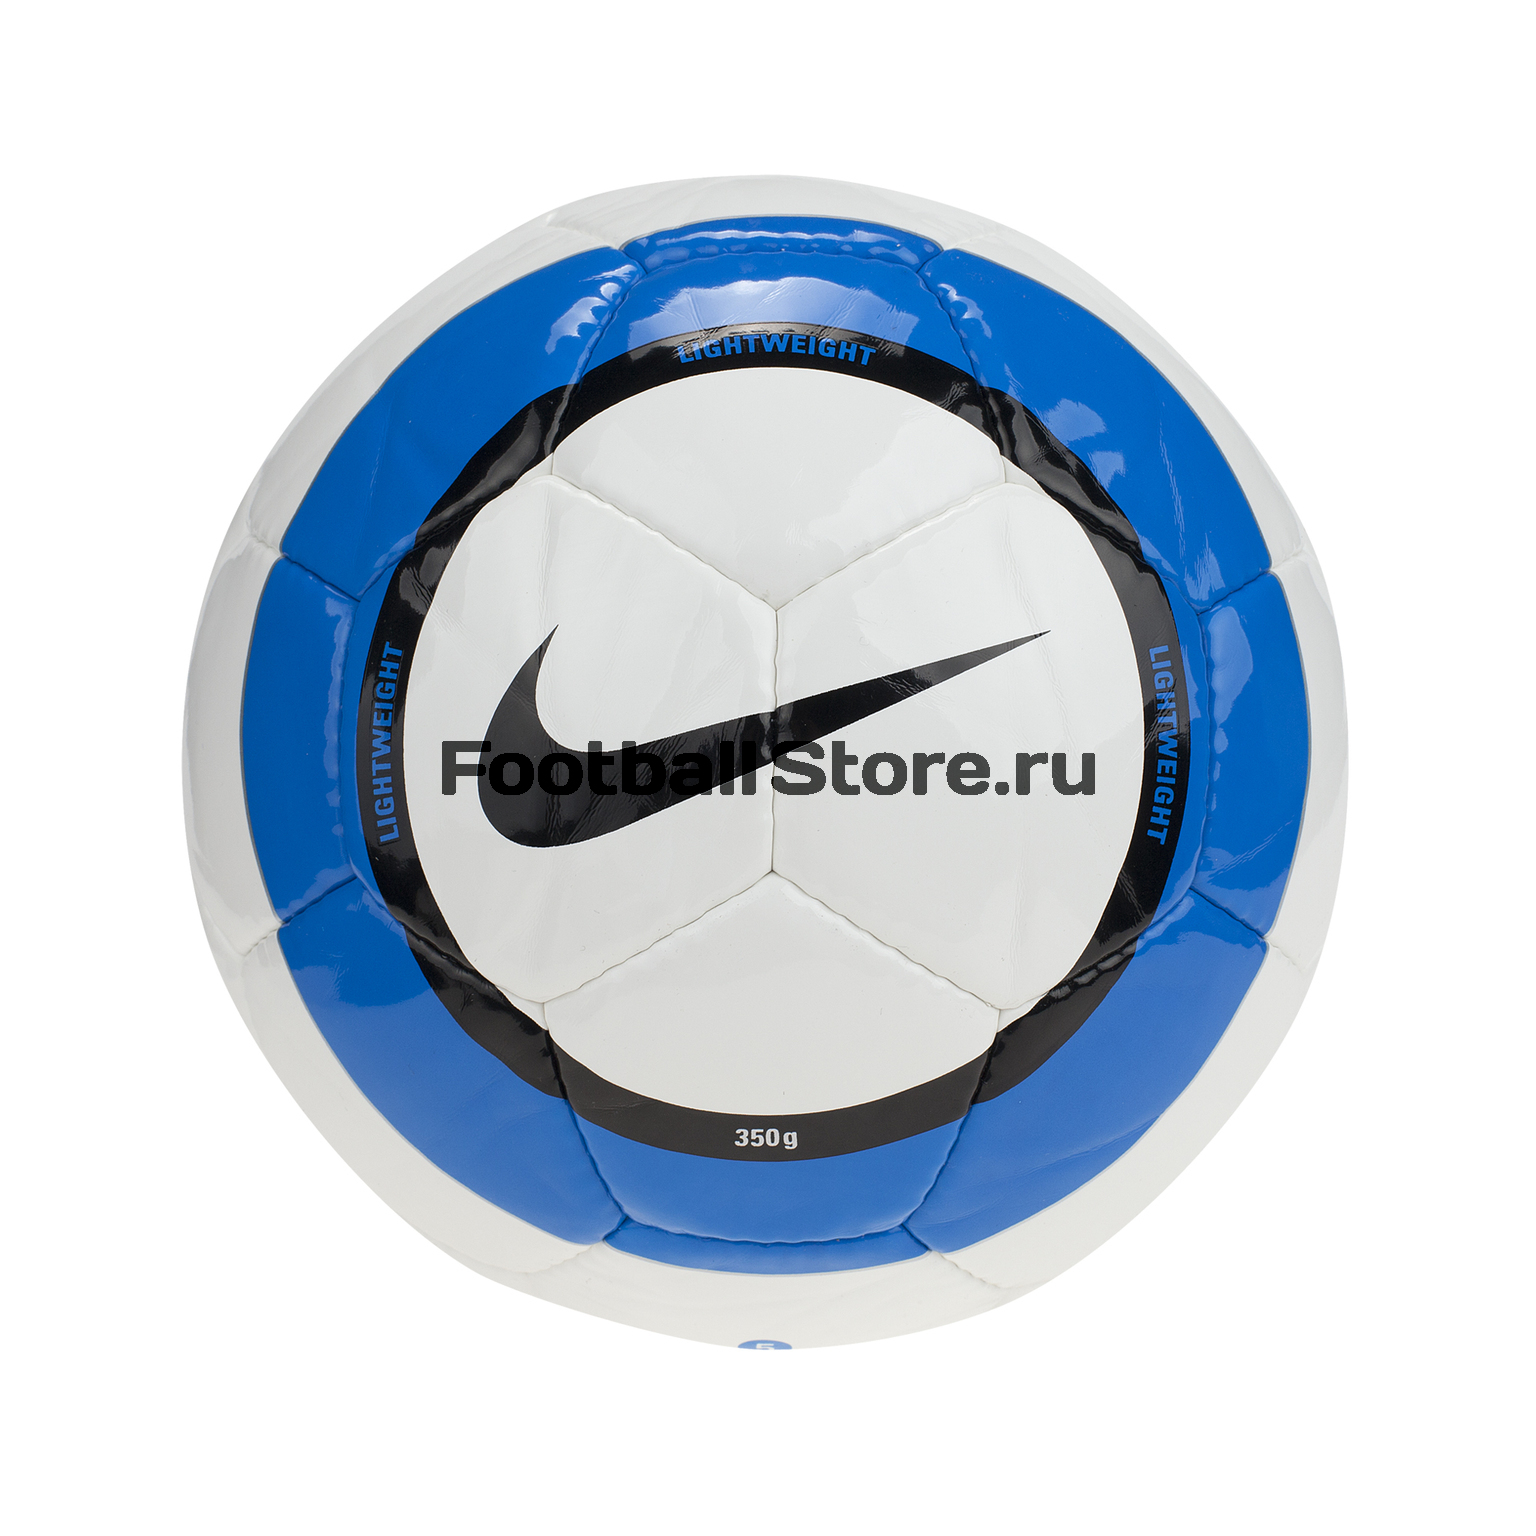 Мяч футбольный Nike lightweight (350g)